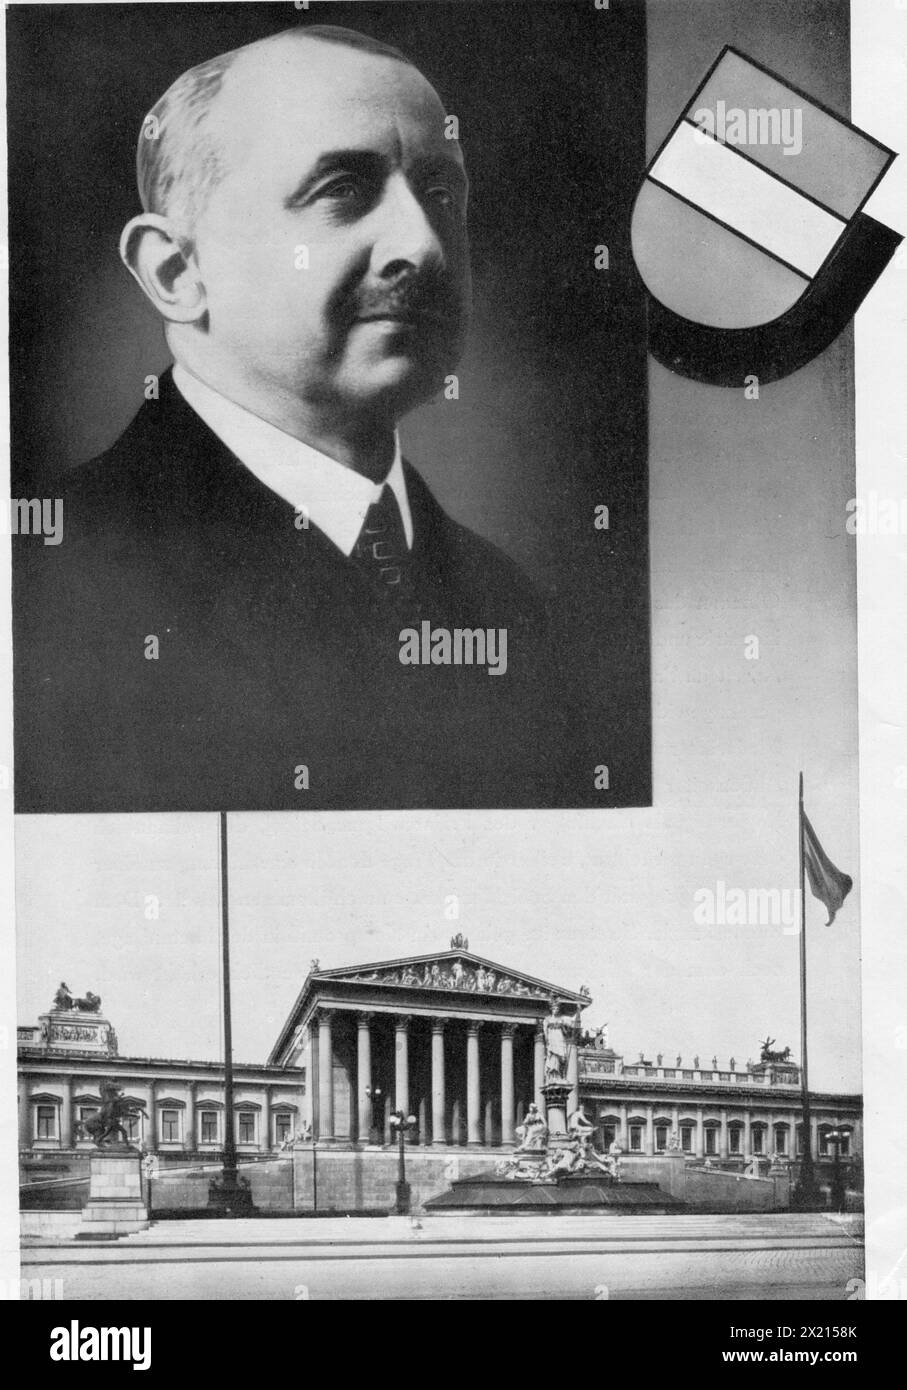 Streeruwitz, Ernst, 23.9.1874 - 19.10.1952, österreichischer Politiker (CSP), Bundeskanzerin 1929, ADDITIONAL-RIGHTS-CLEARANCE-INFO-NOT-AVAILABLE Stockfoto